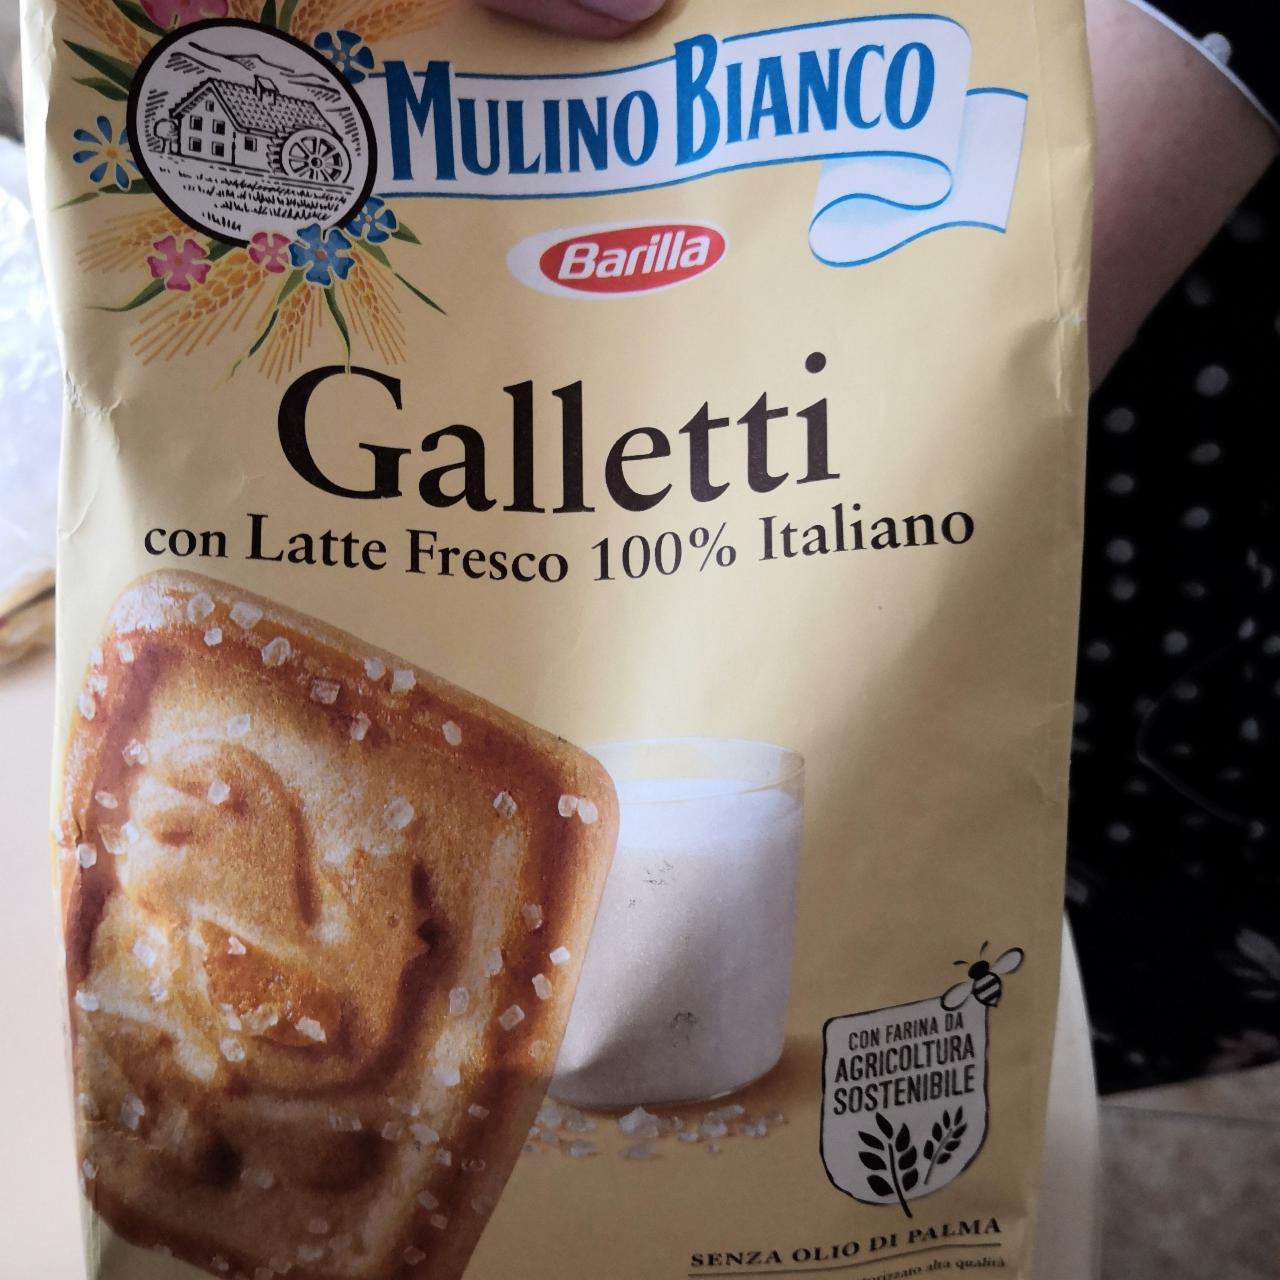 Фото - Galletti con Latte Fresco 100% Italiano Mulino Bianco